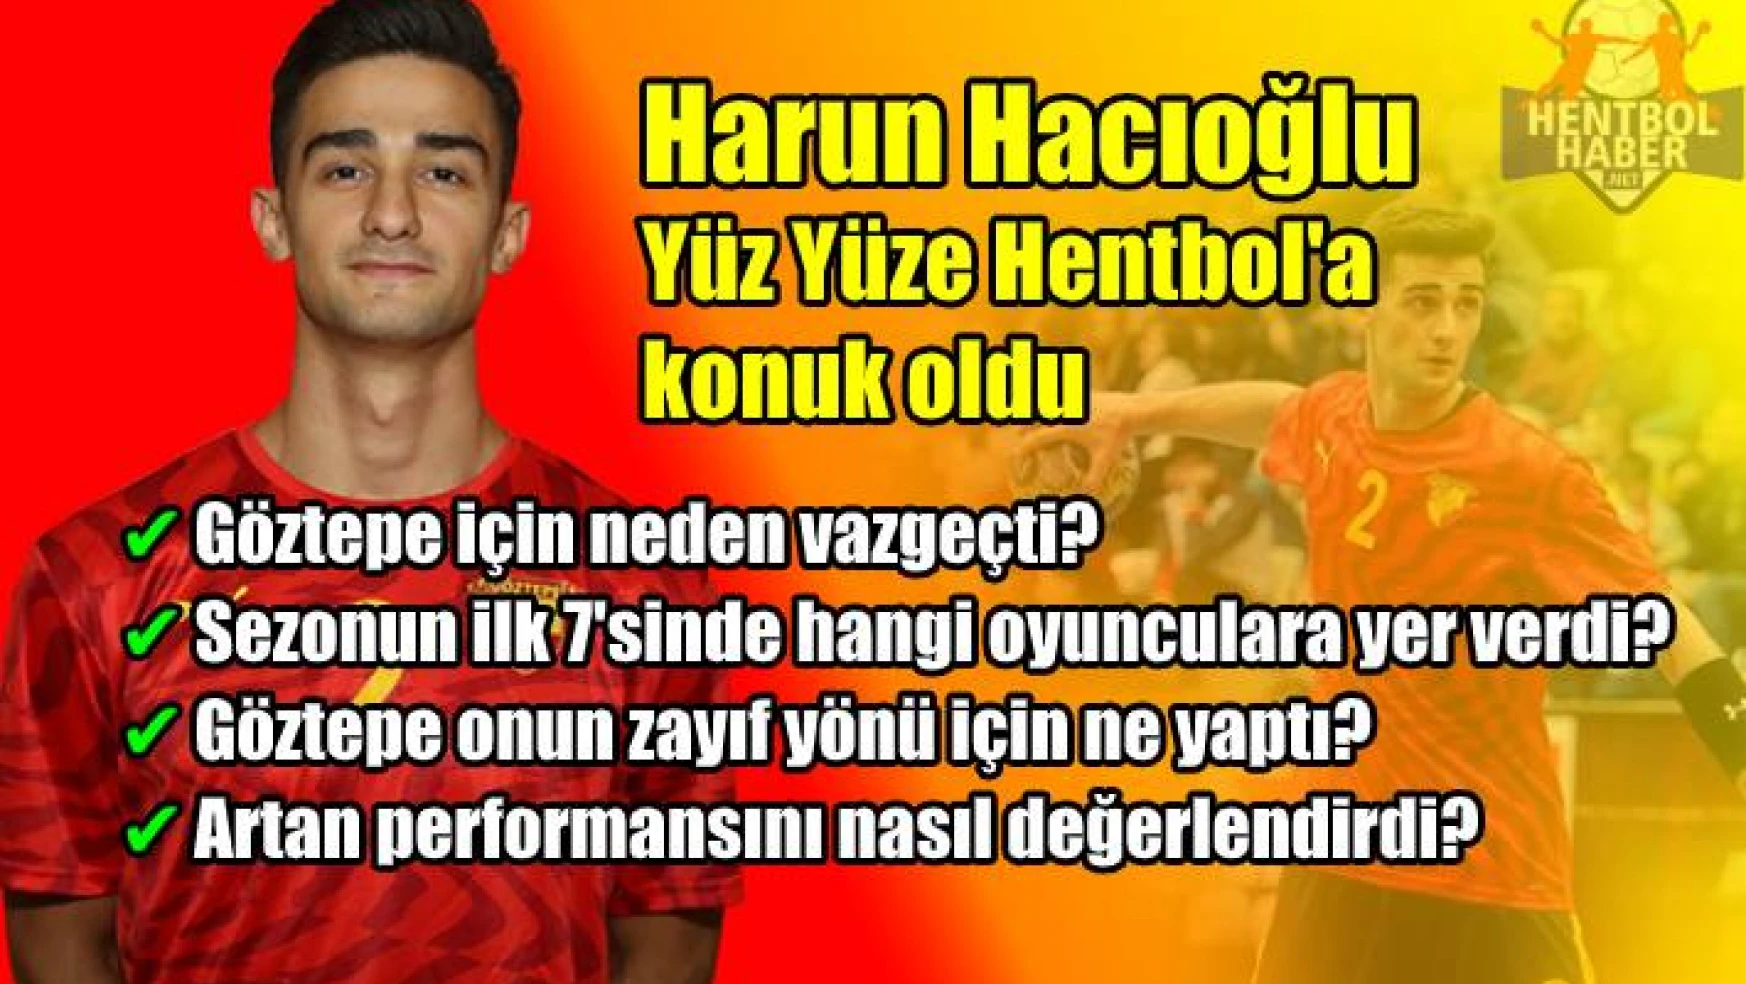 Harun Hacıoğlu: “Göztepe için reddettim”